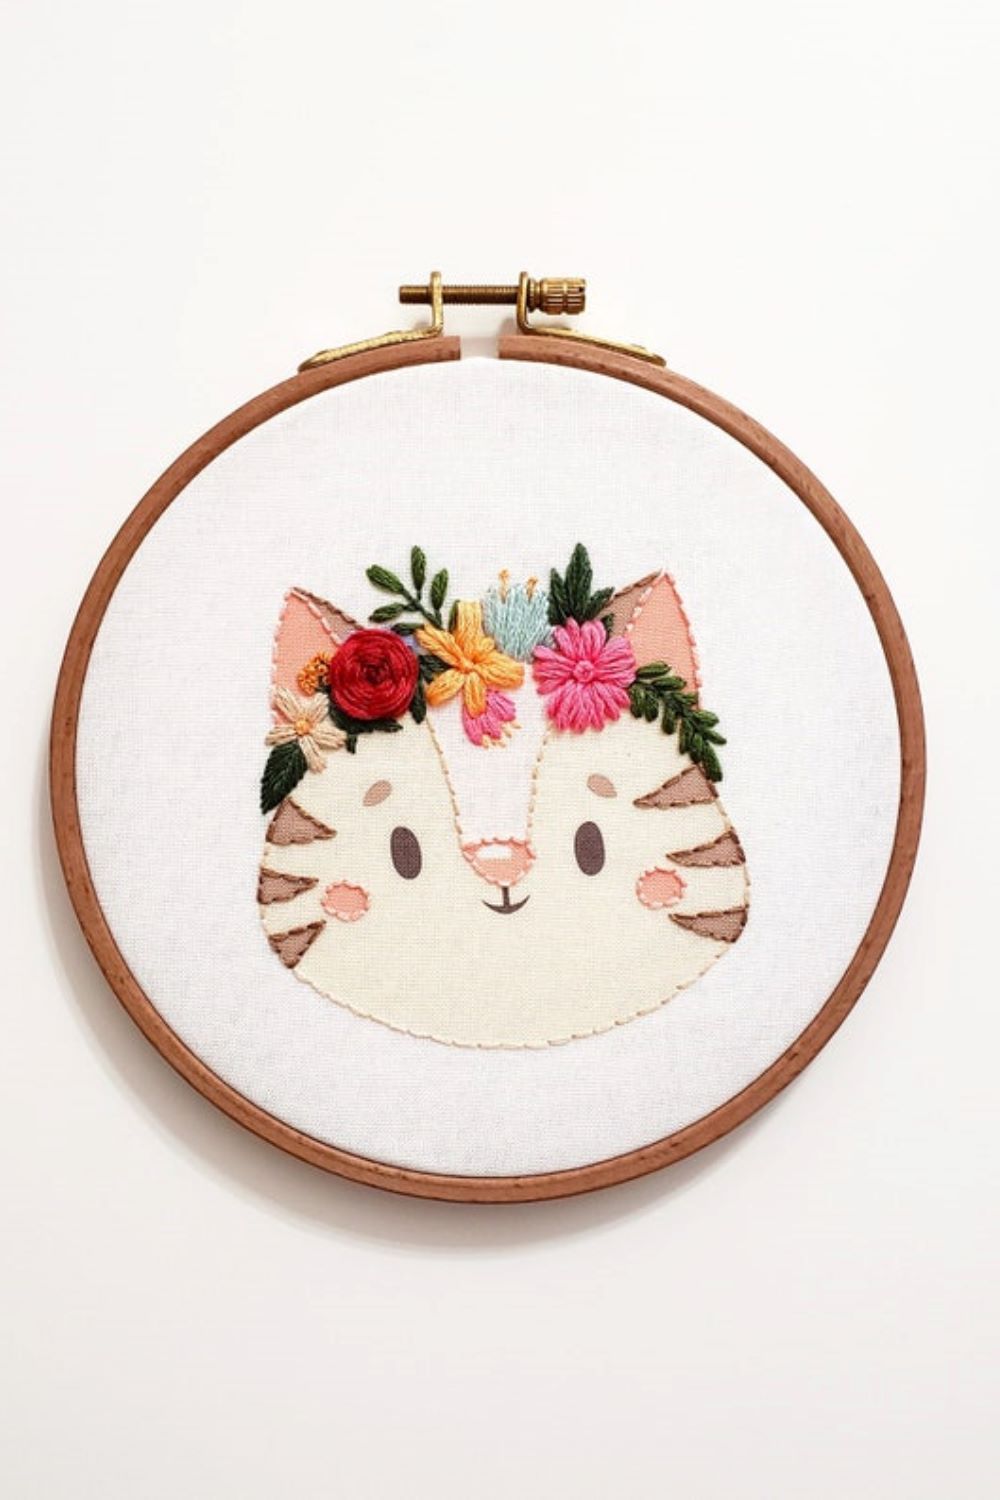 wall hanging flower crown cat embroidery hoop by CuteLittleHoop